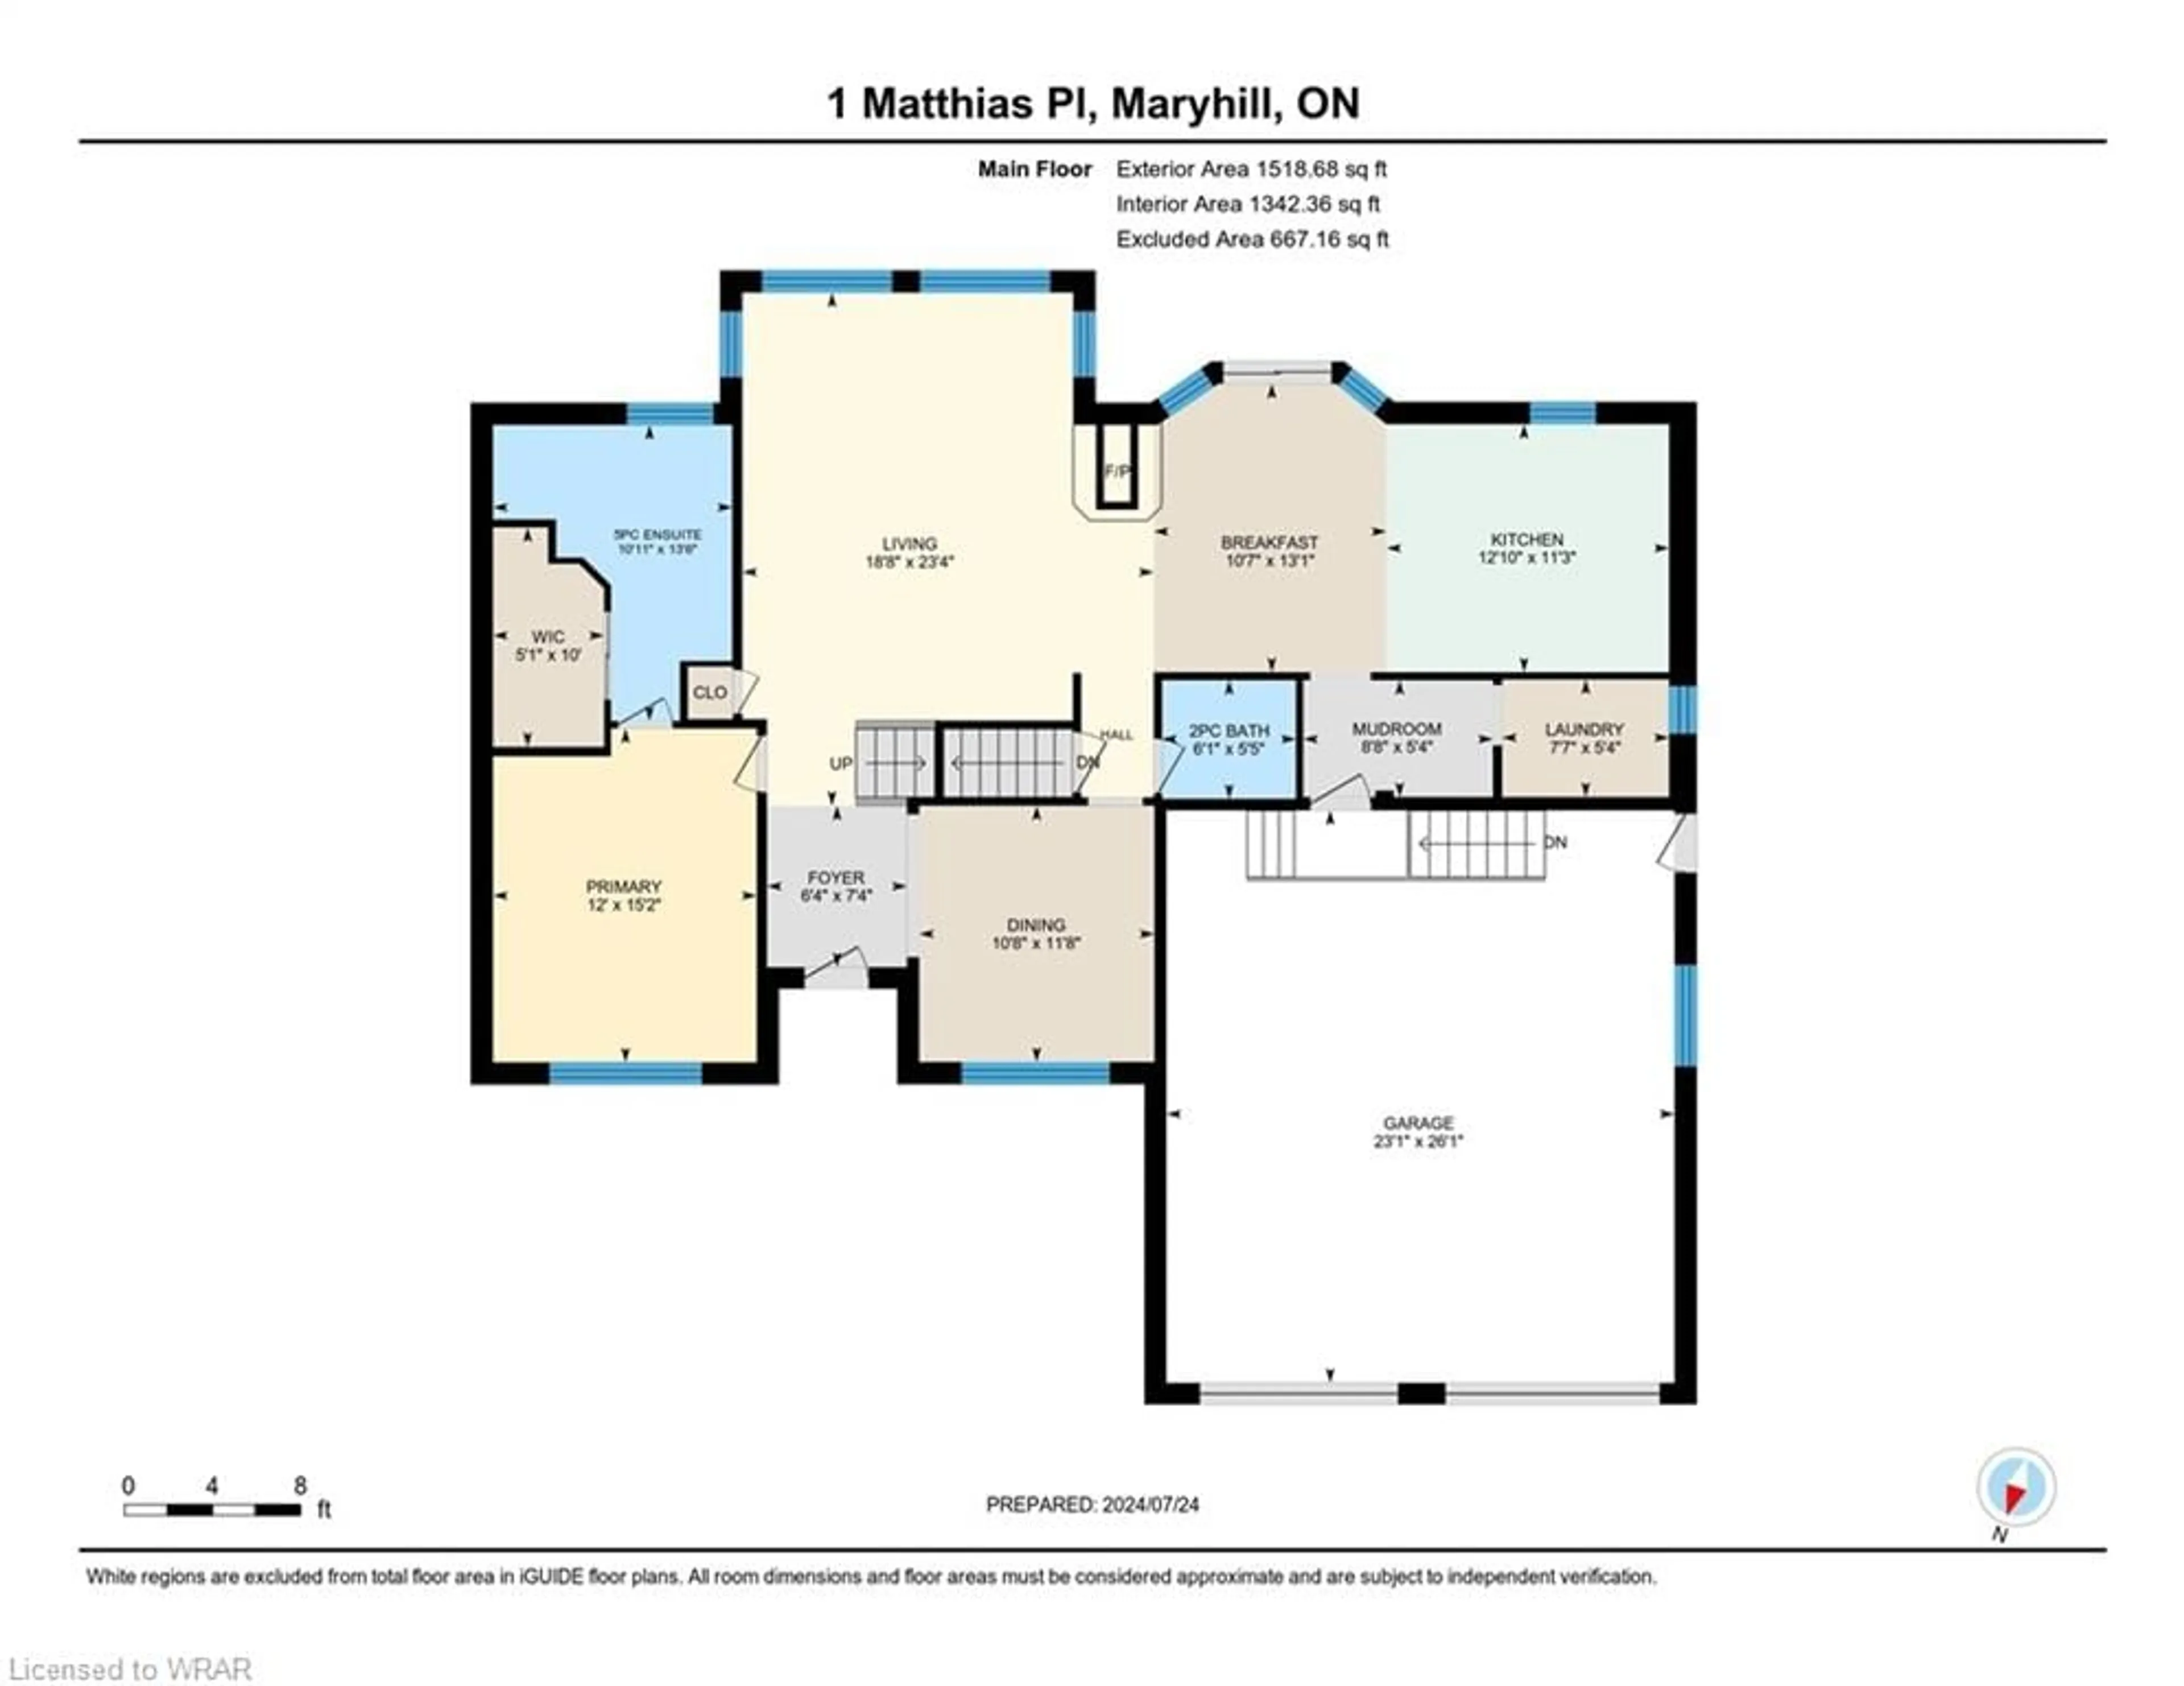 Floor plan for 1 Matthias Pl, Maryhill Ontario N0B 2B0